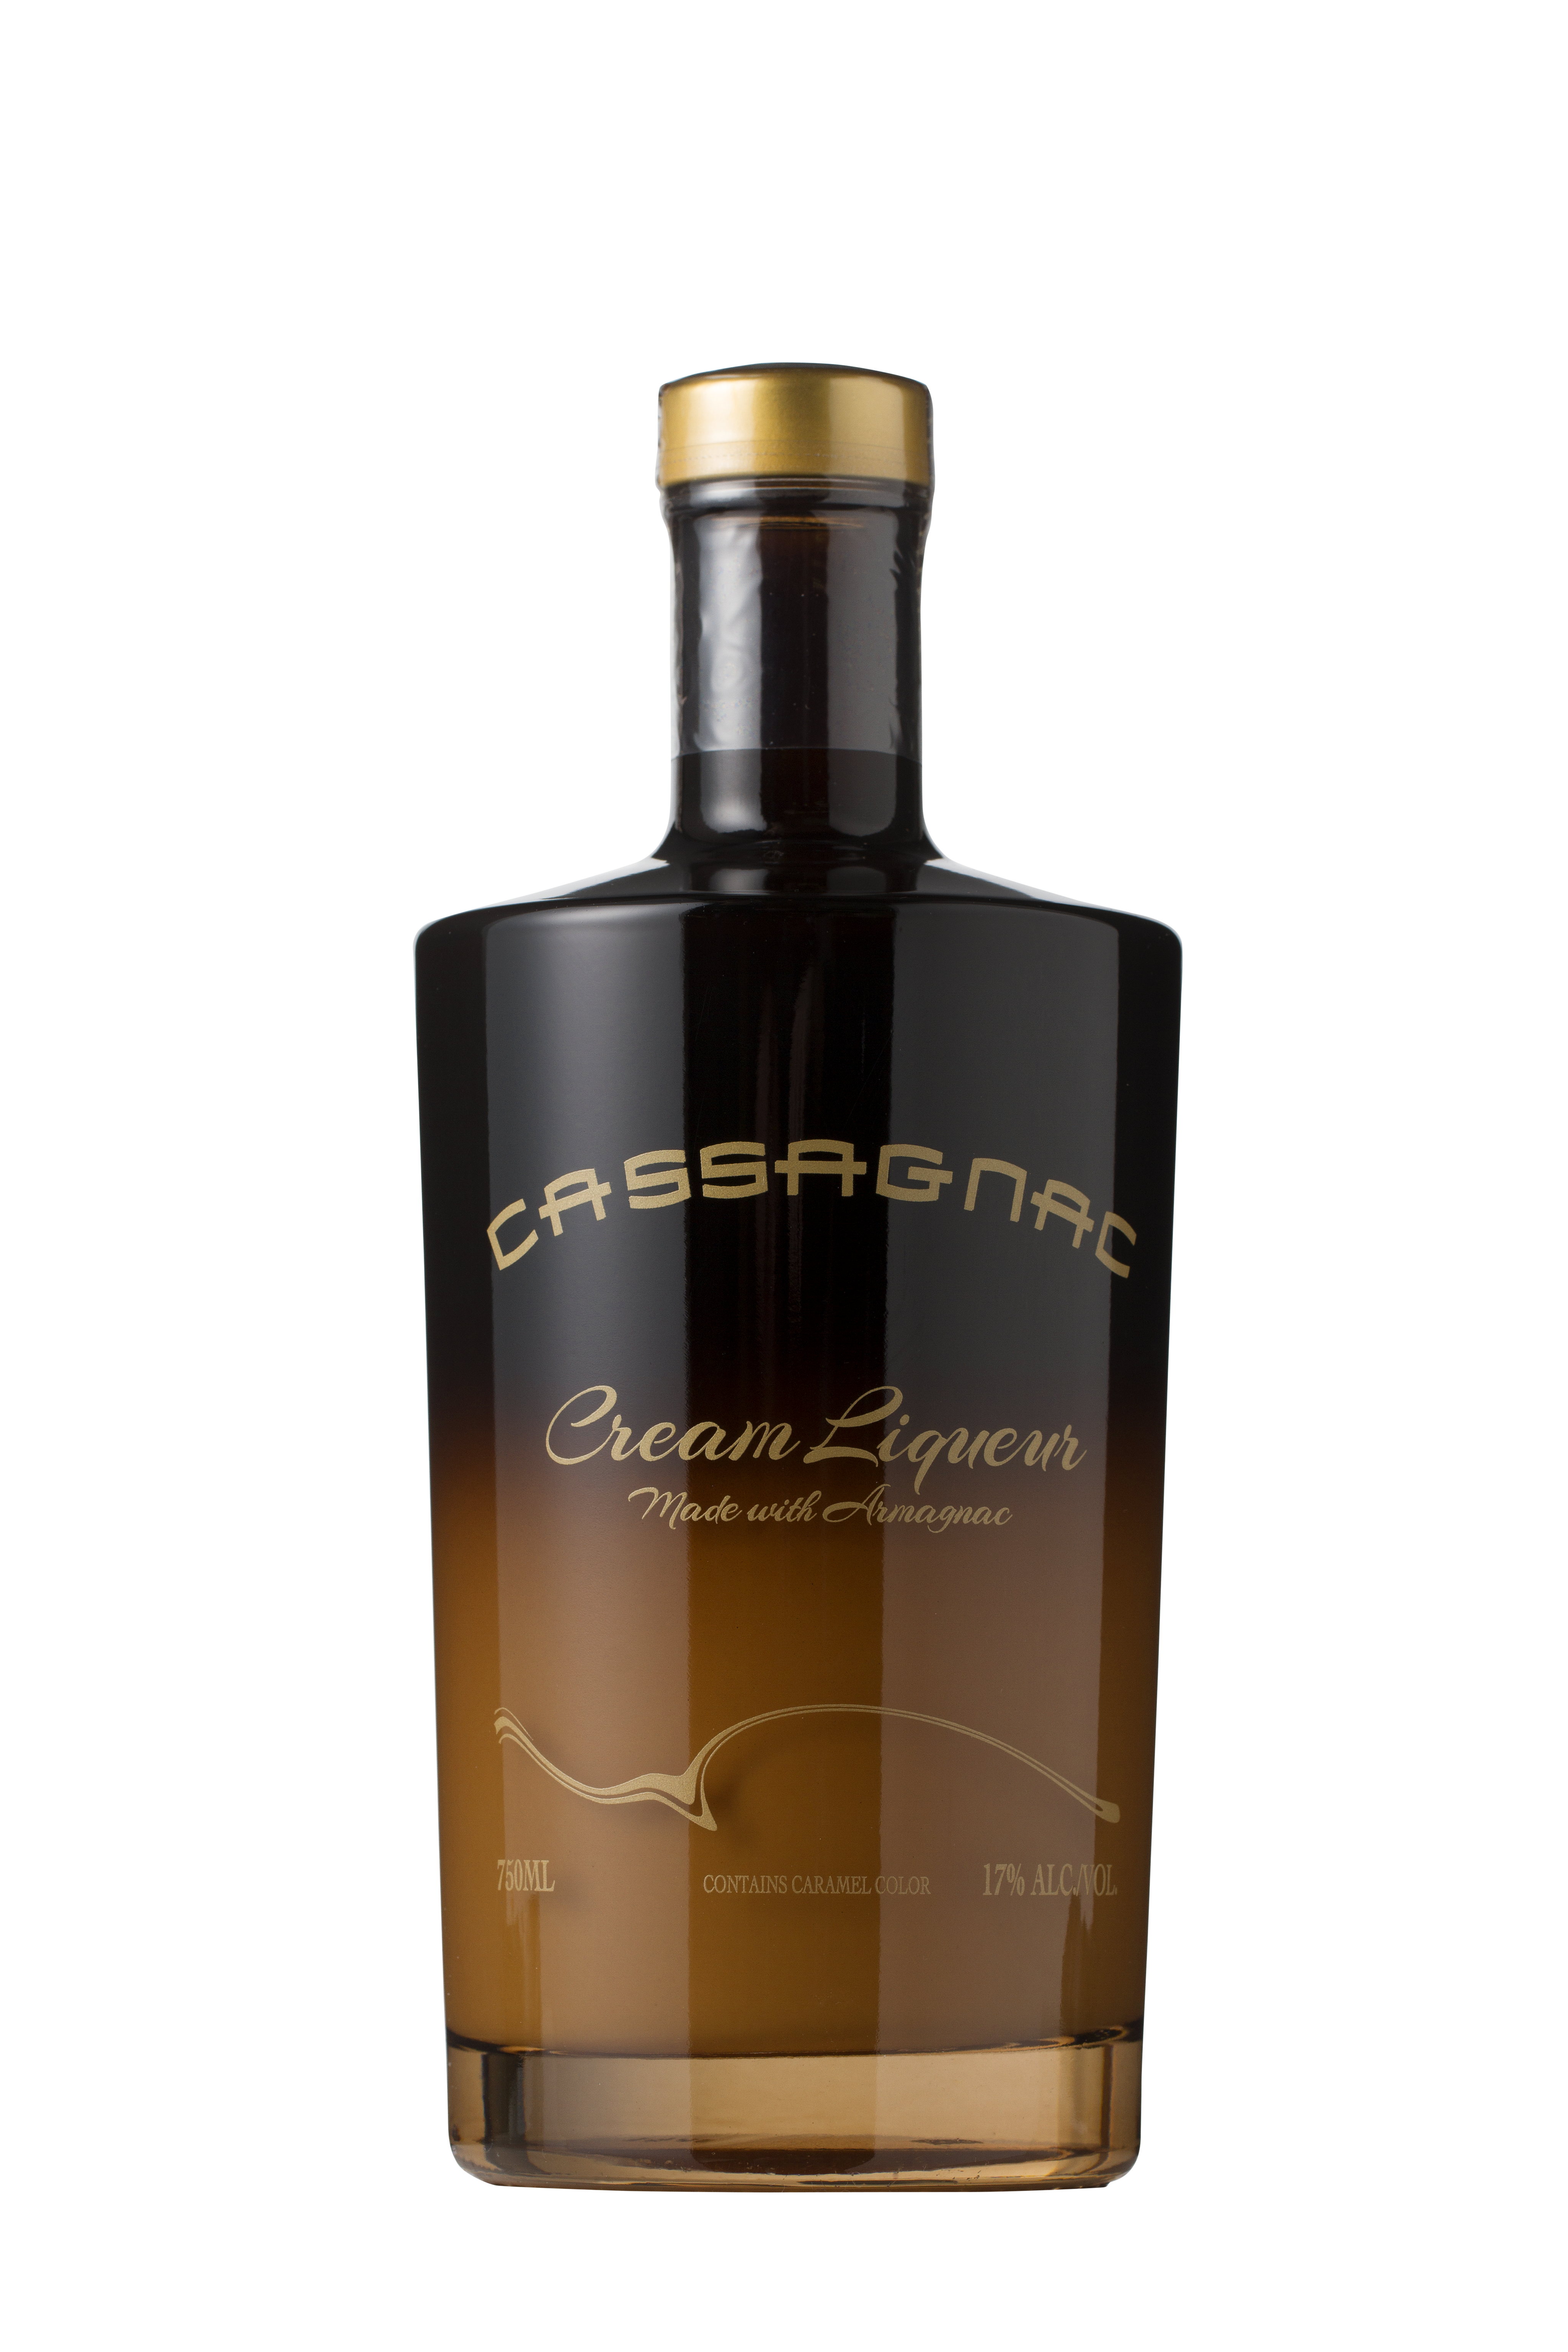 Cassagnac, Armagnac cream liqueur